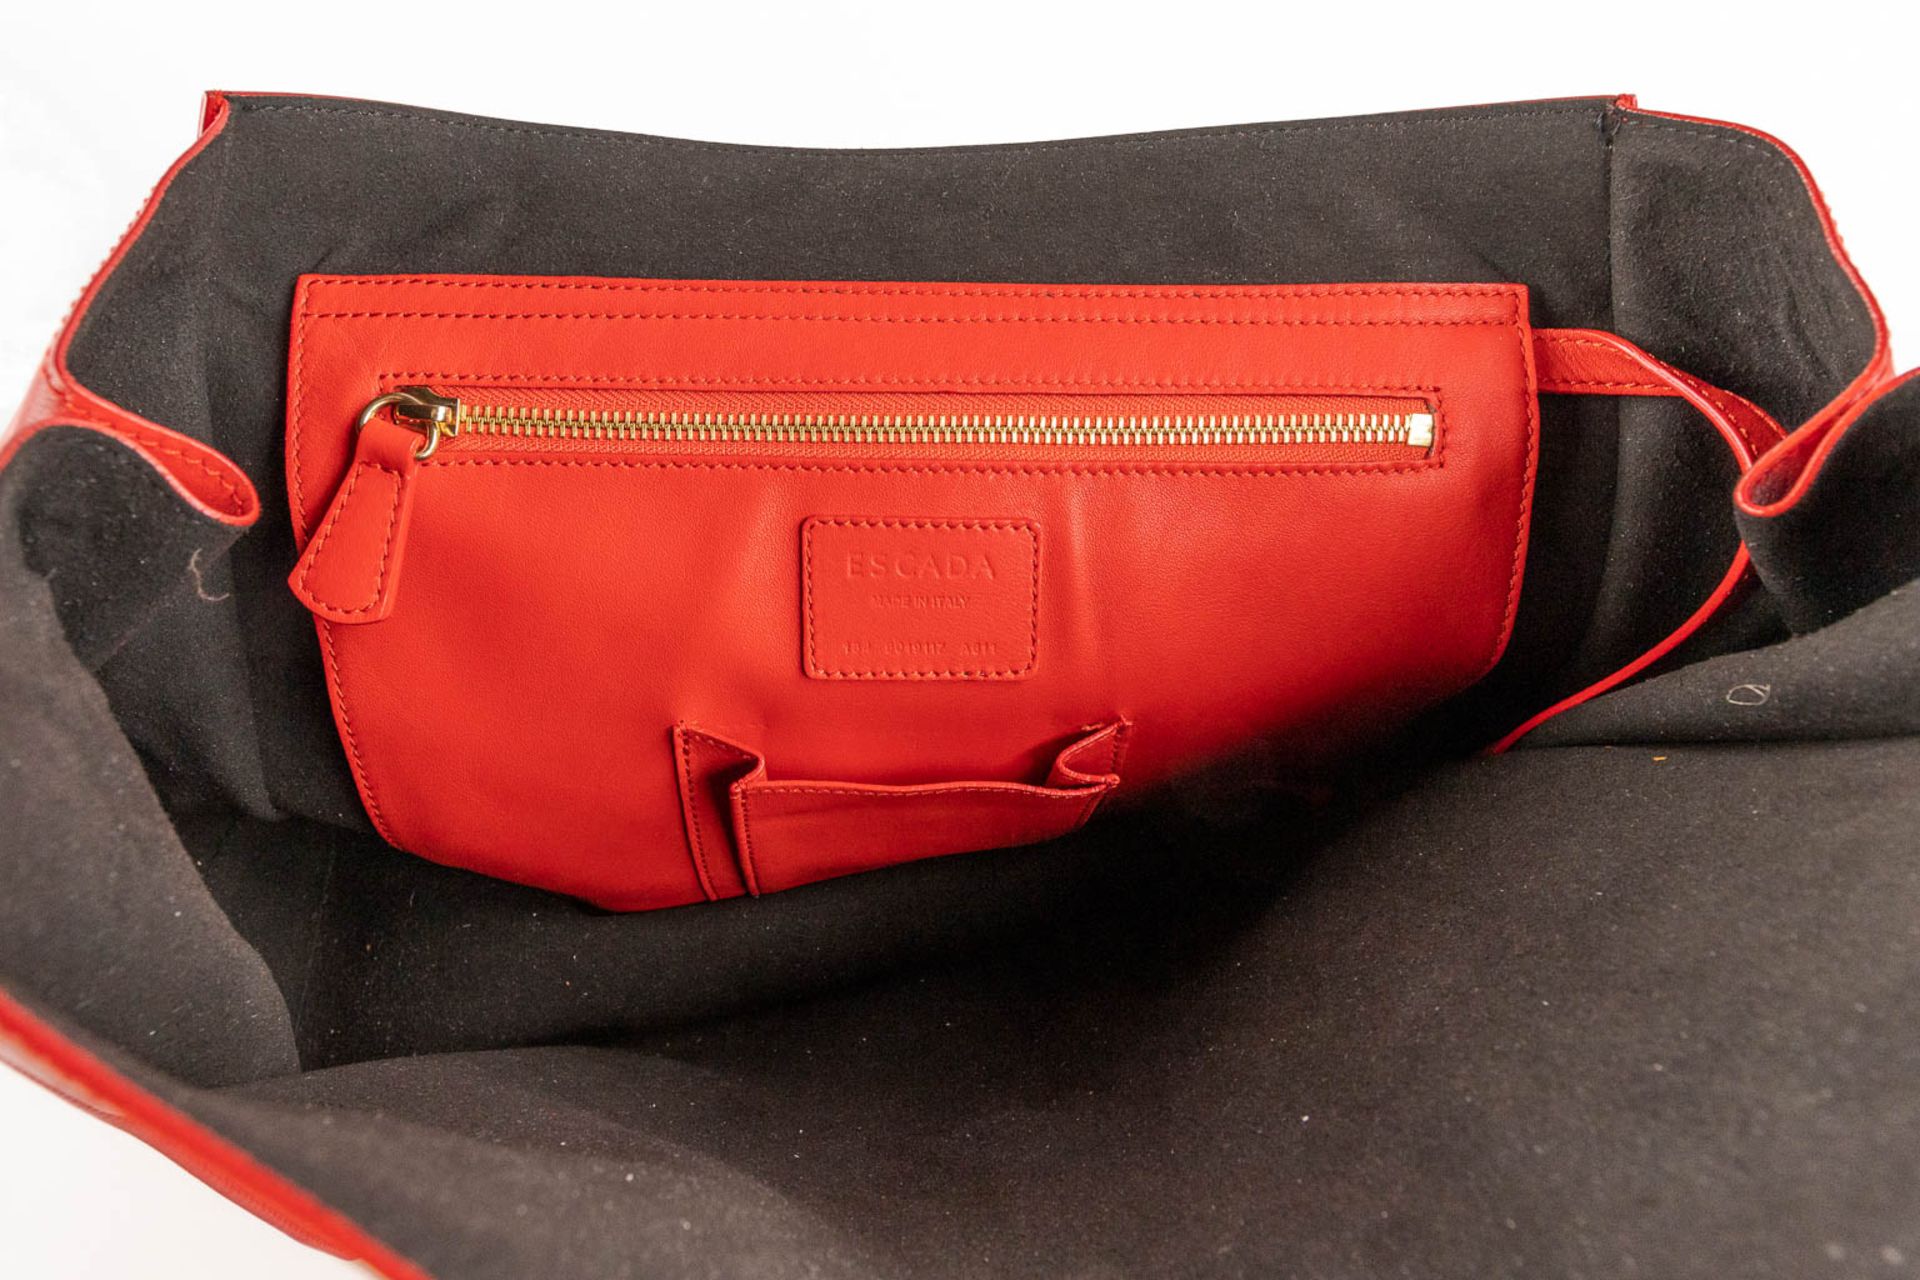 Escada, a handbag made of red leather. (W:33 x H:28 cm) - Bild 15 aus 17